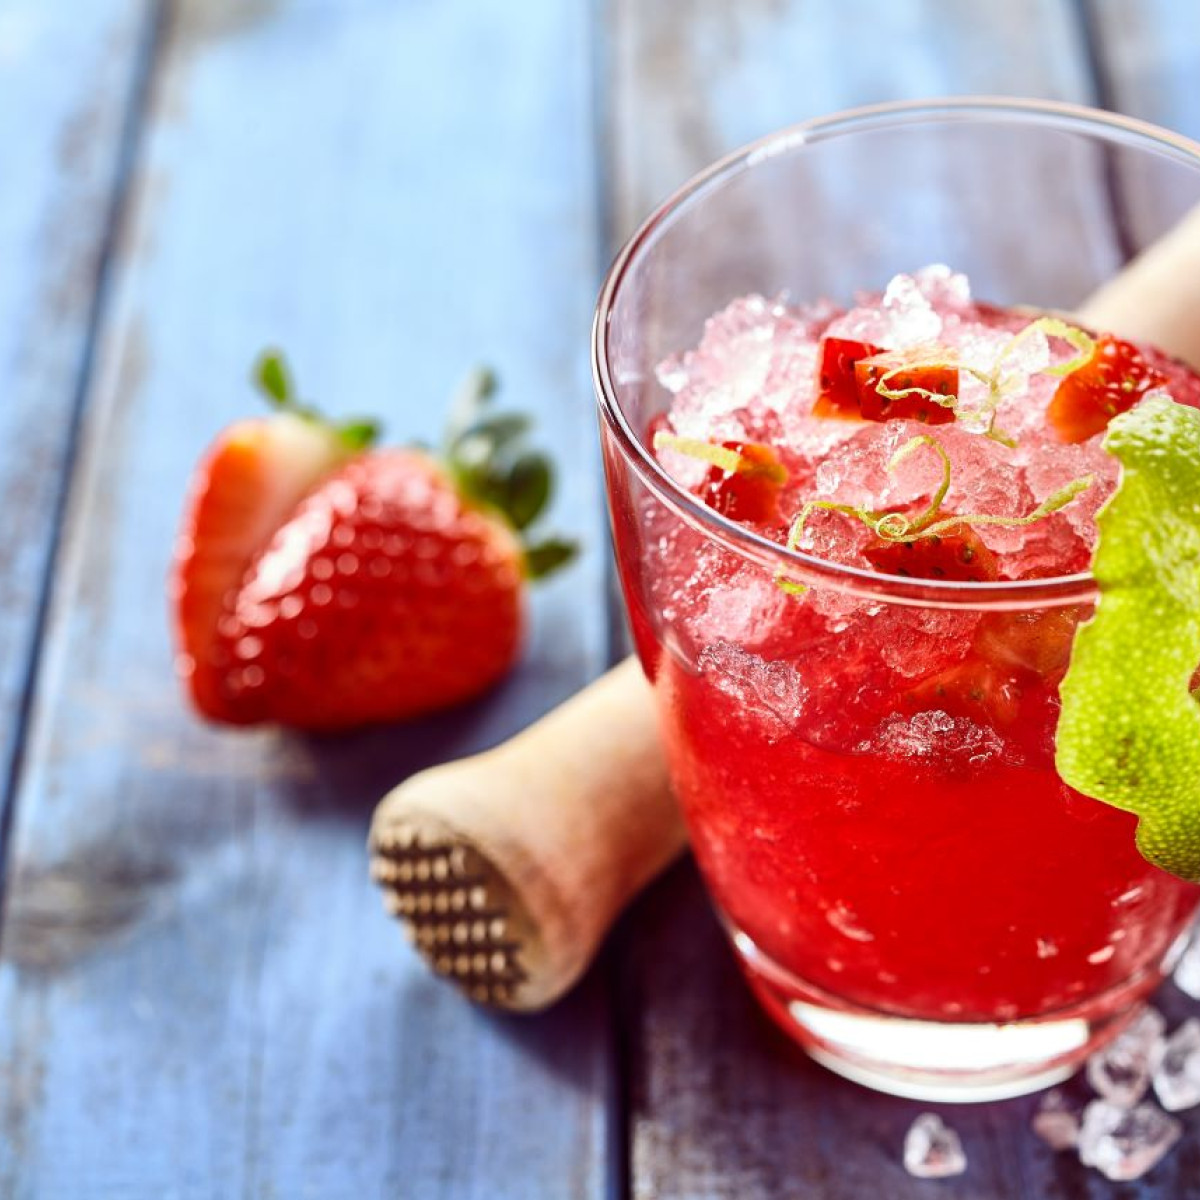 Slushy – napój z owoców i kruszonego lodu